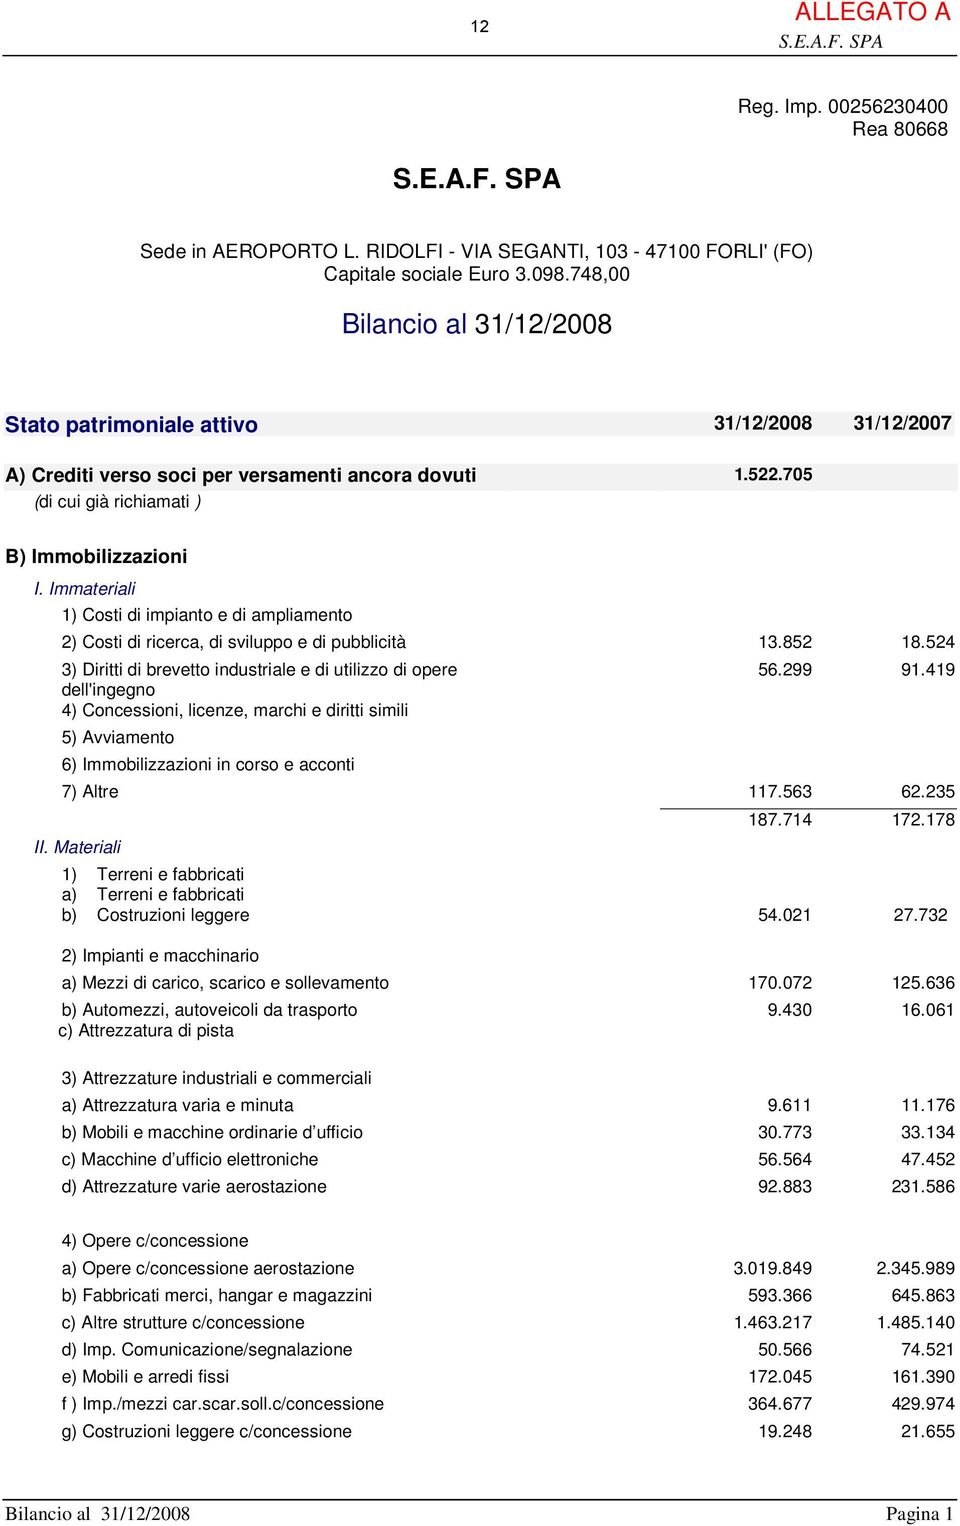 Immateriali 1) Costi di impianto e di ampliamento 2) Costi di ricerca, di sviluppo e di pubblicità 13.852 18.